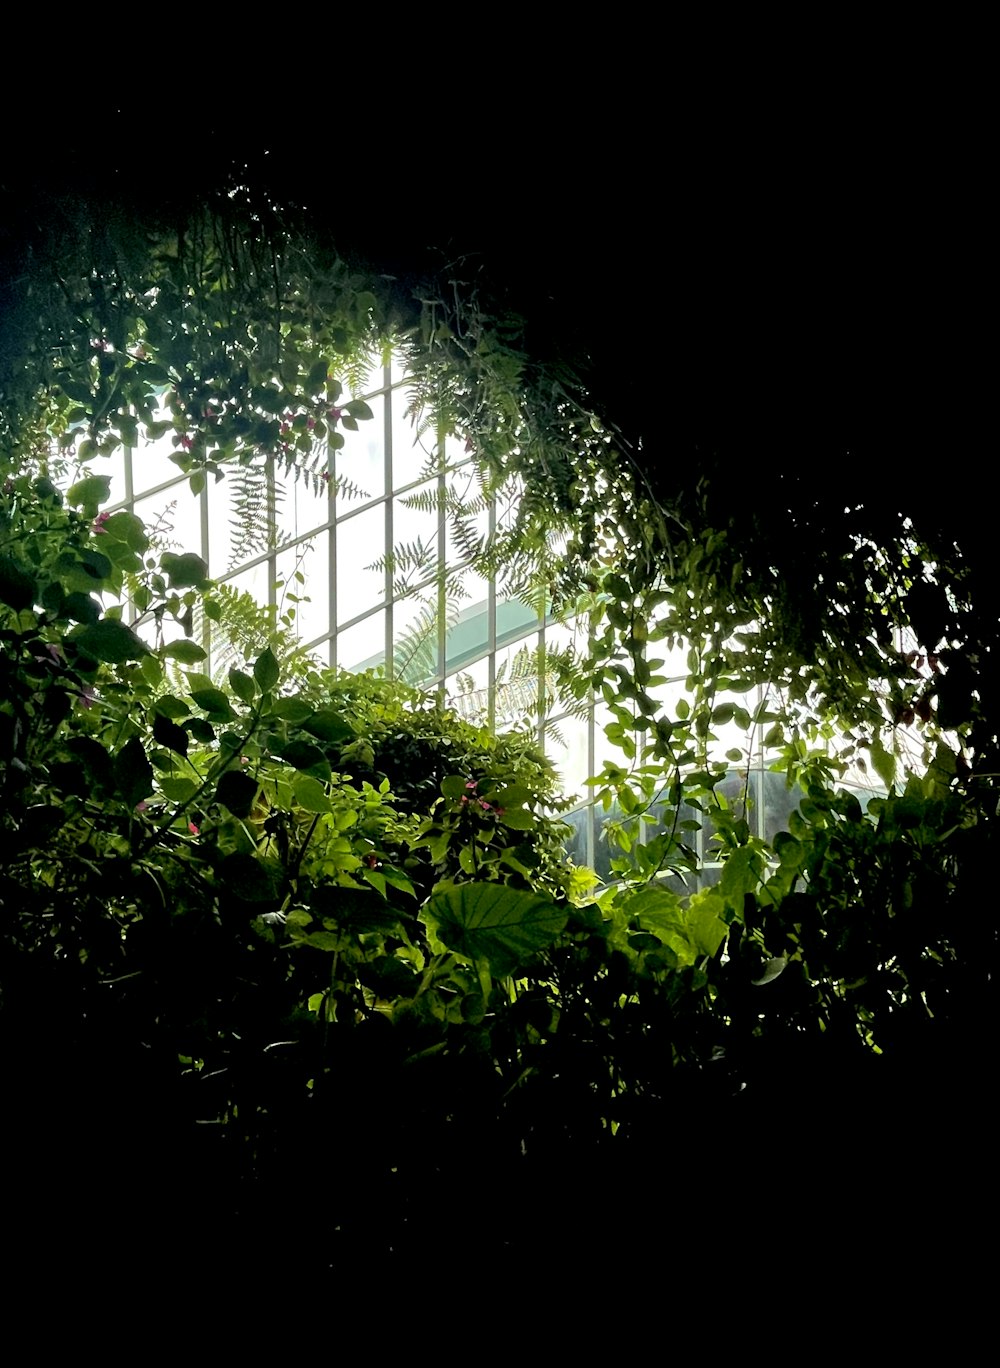 Une fenêtre au milieu d’une forêt verdoyante